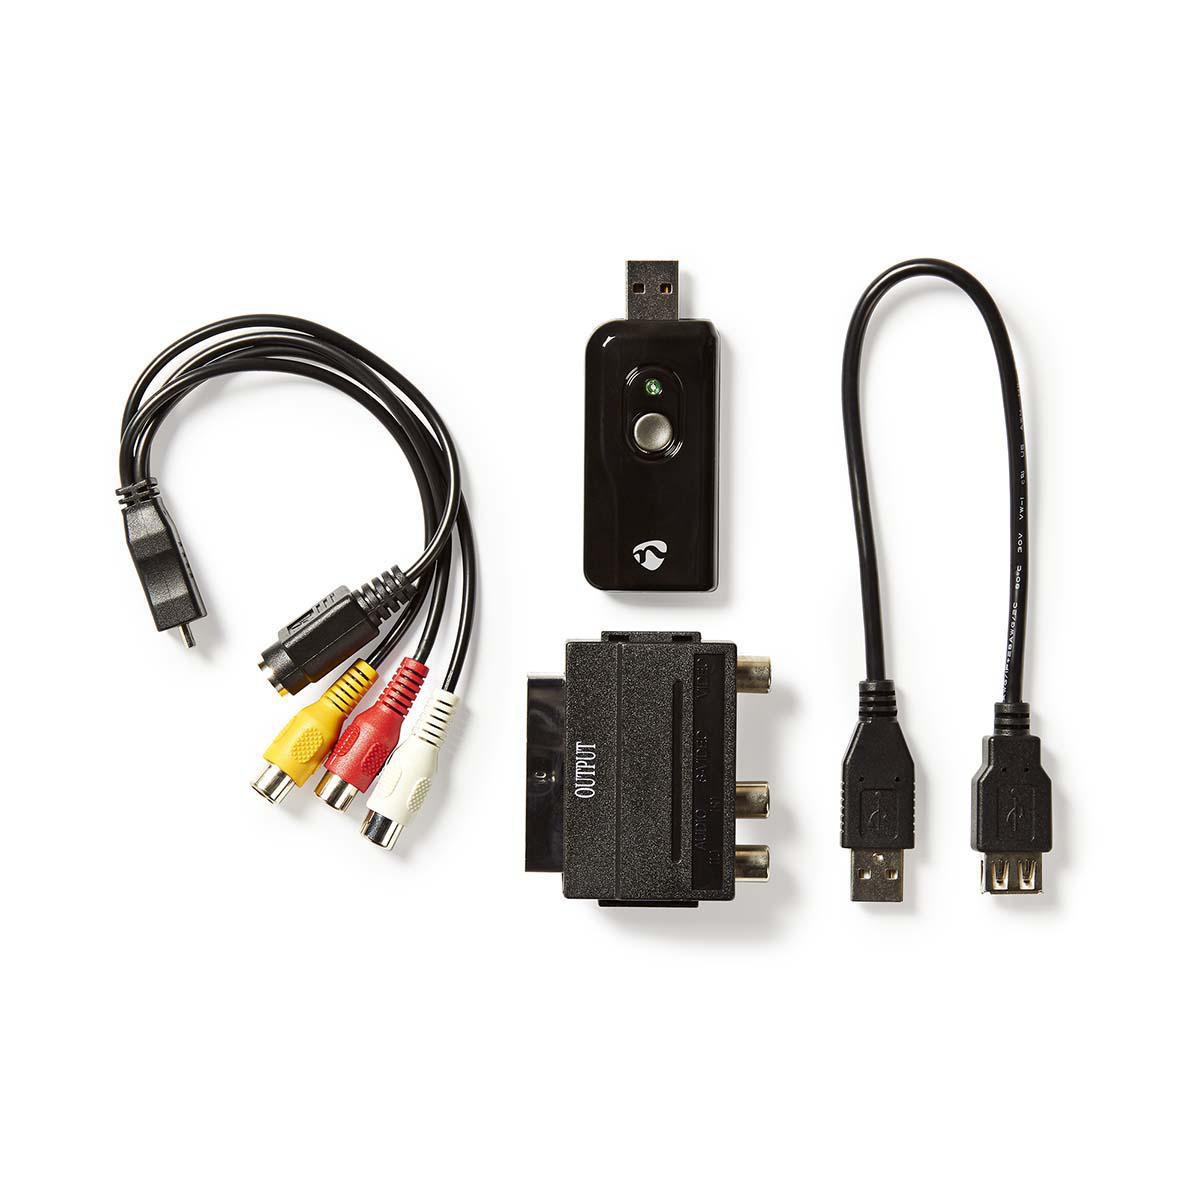 DCR-SX31E AV Kabel Stereo Video TV Kabel für Sony DCR-SX30E 